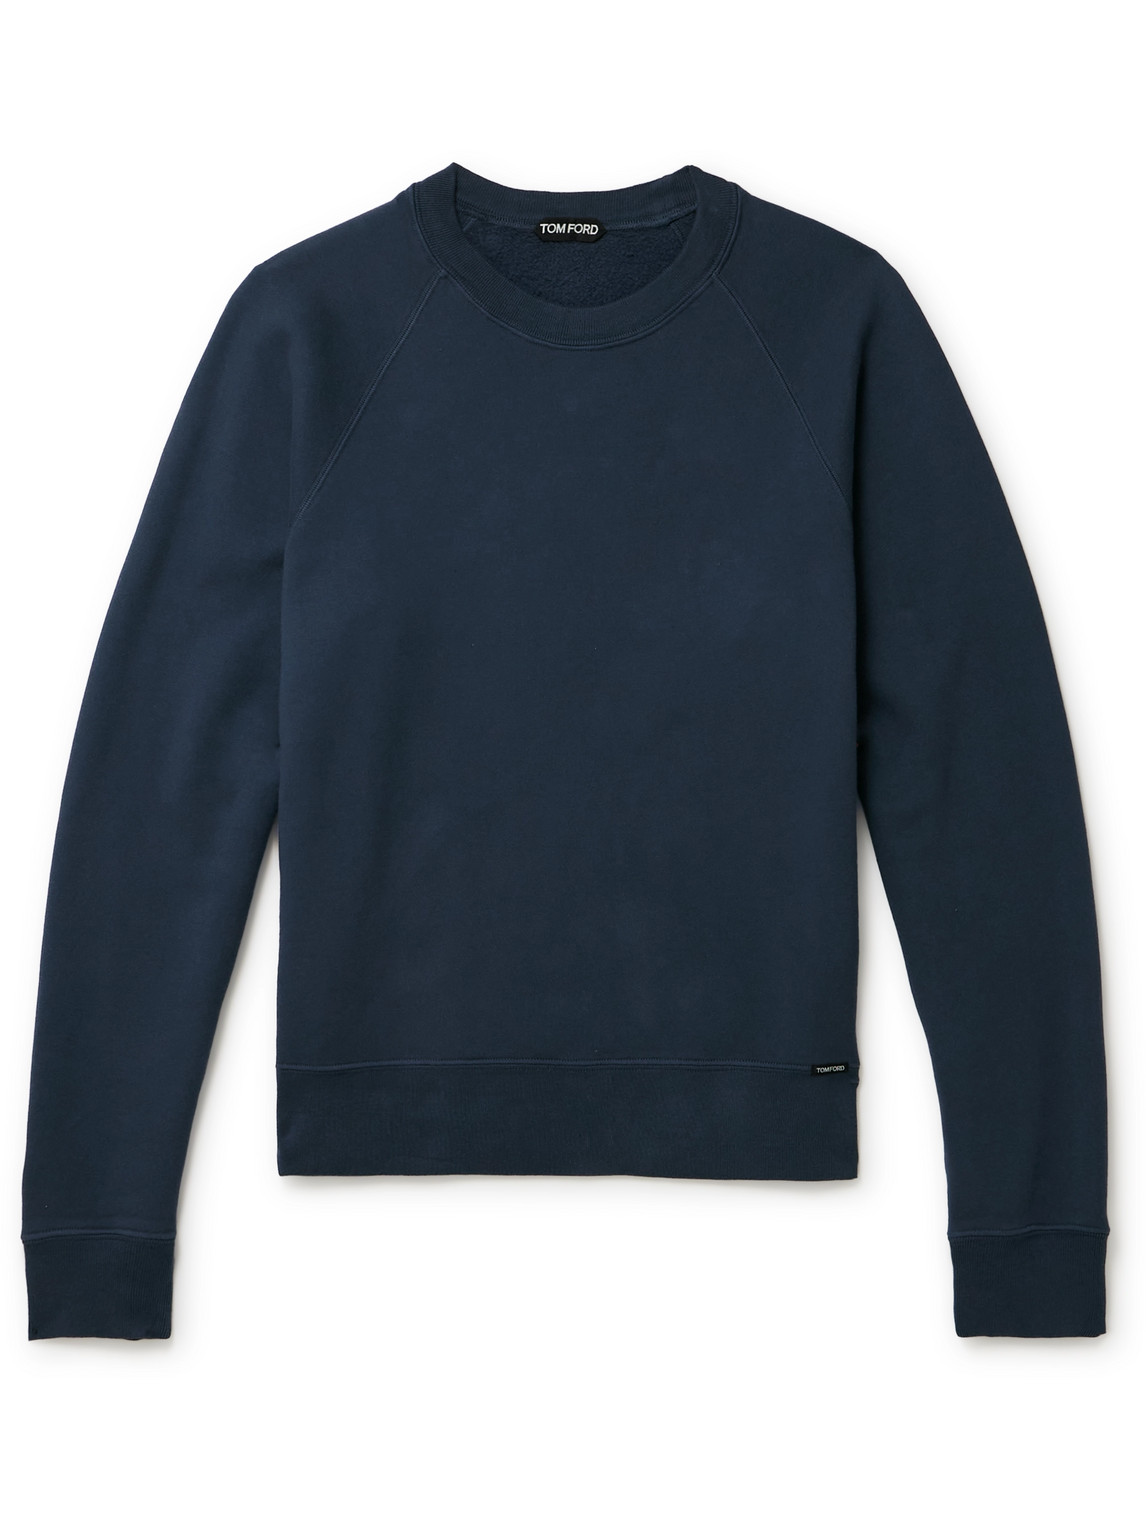 TOM FORD - Garment-Dyed Cotton-Jersey Sweatshirt - Men - Blue - IT 58 von TOM FORD